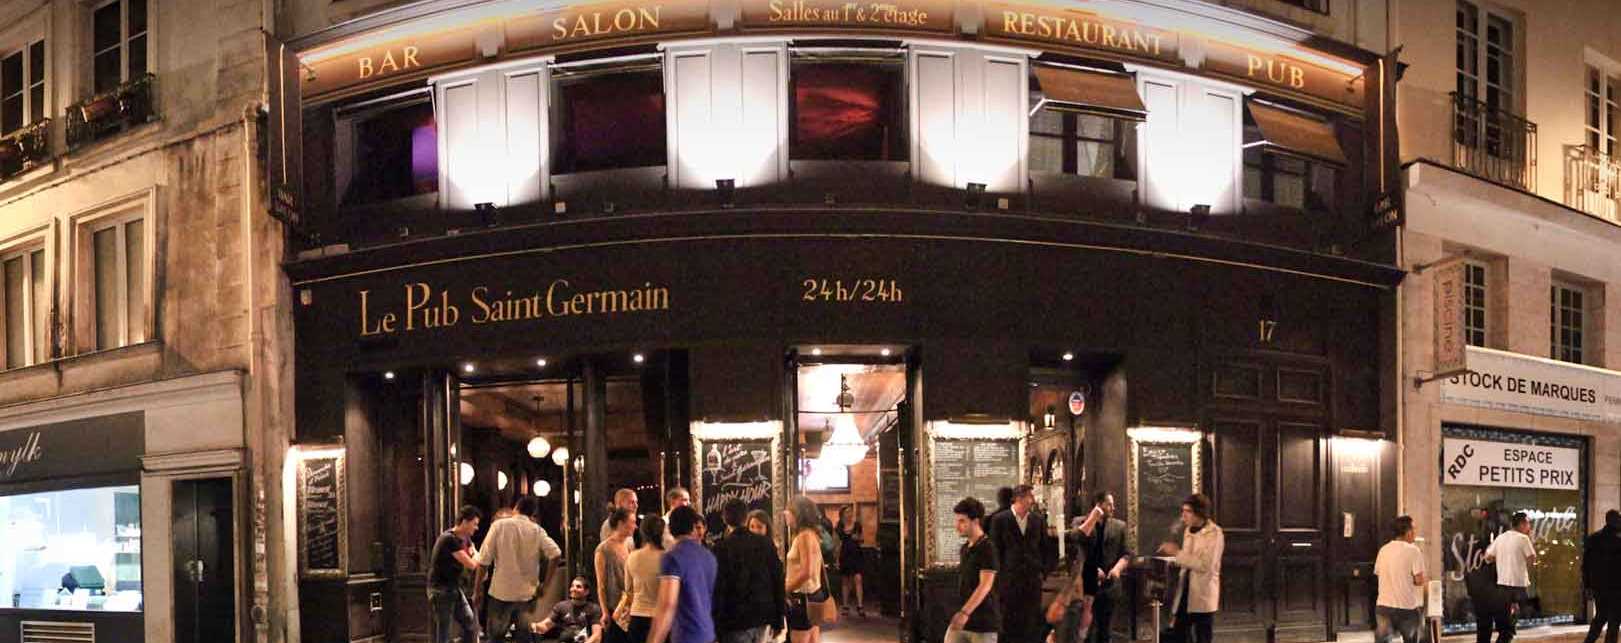 Париж, ресторан Le Pub Saint Germain